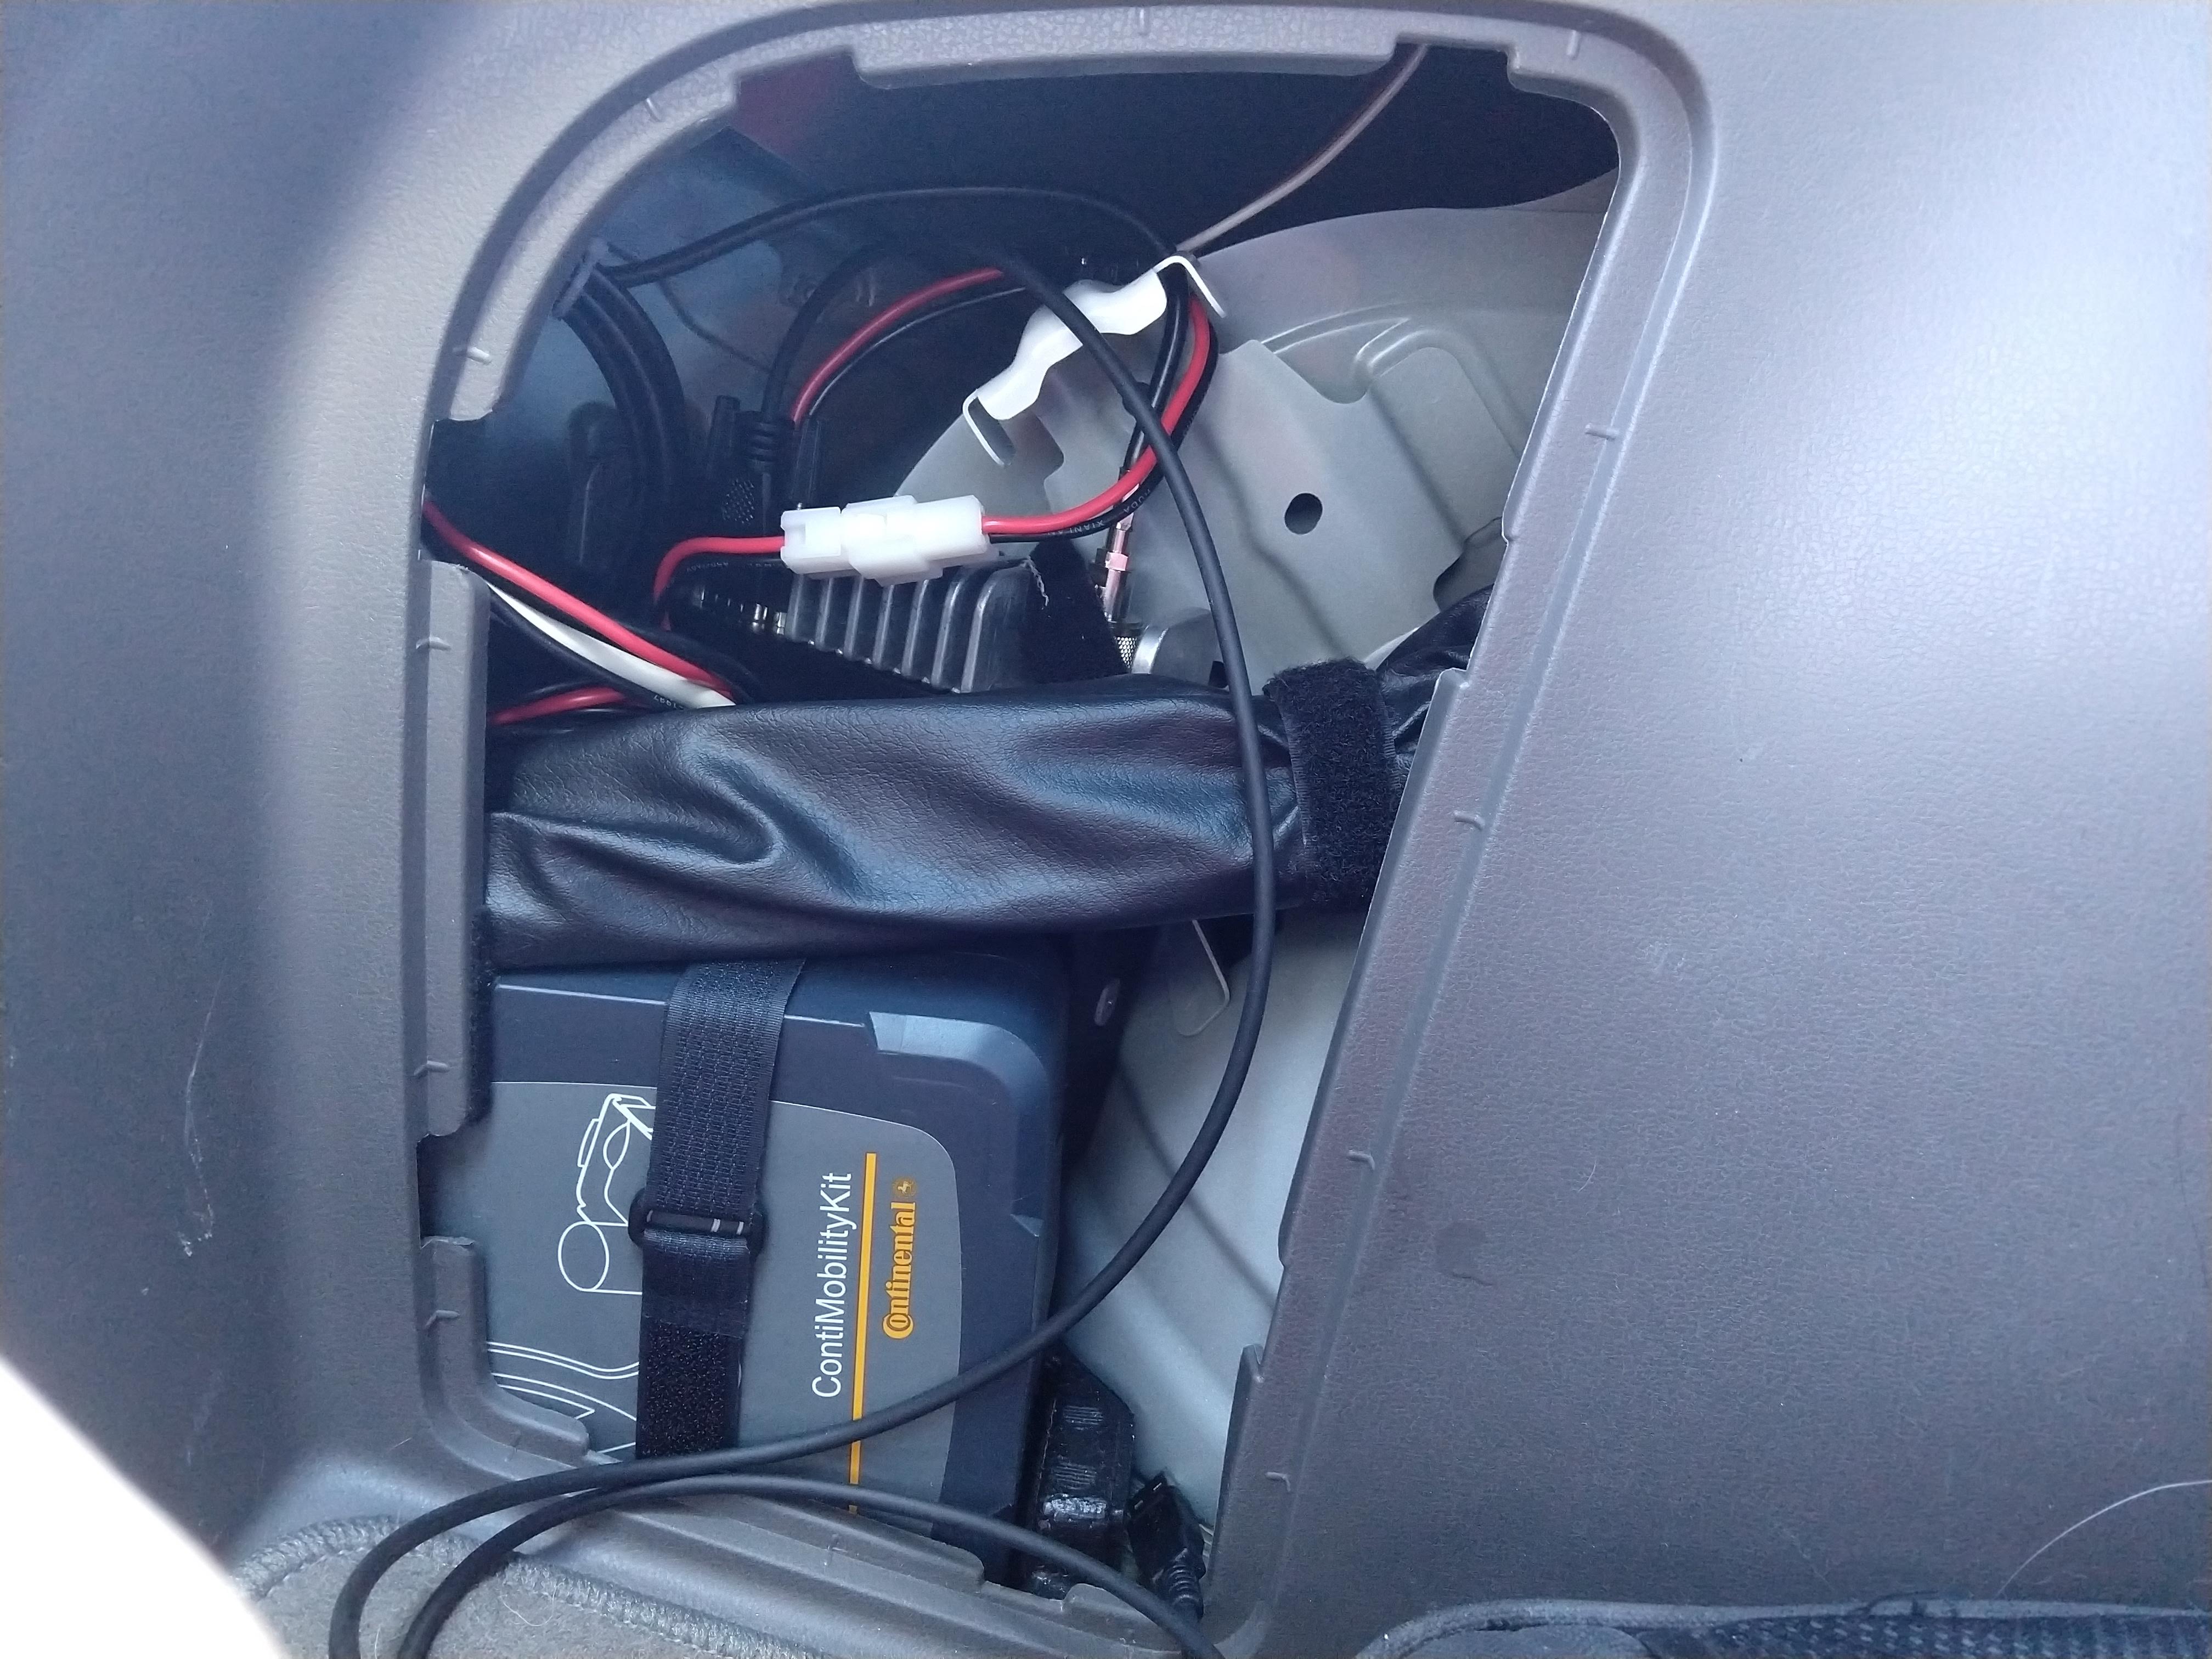 radio in rear compartment